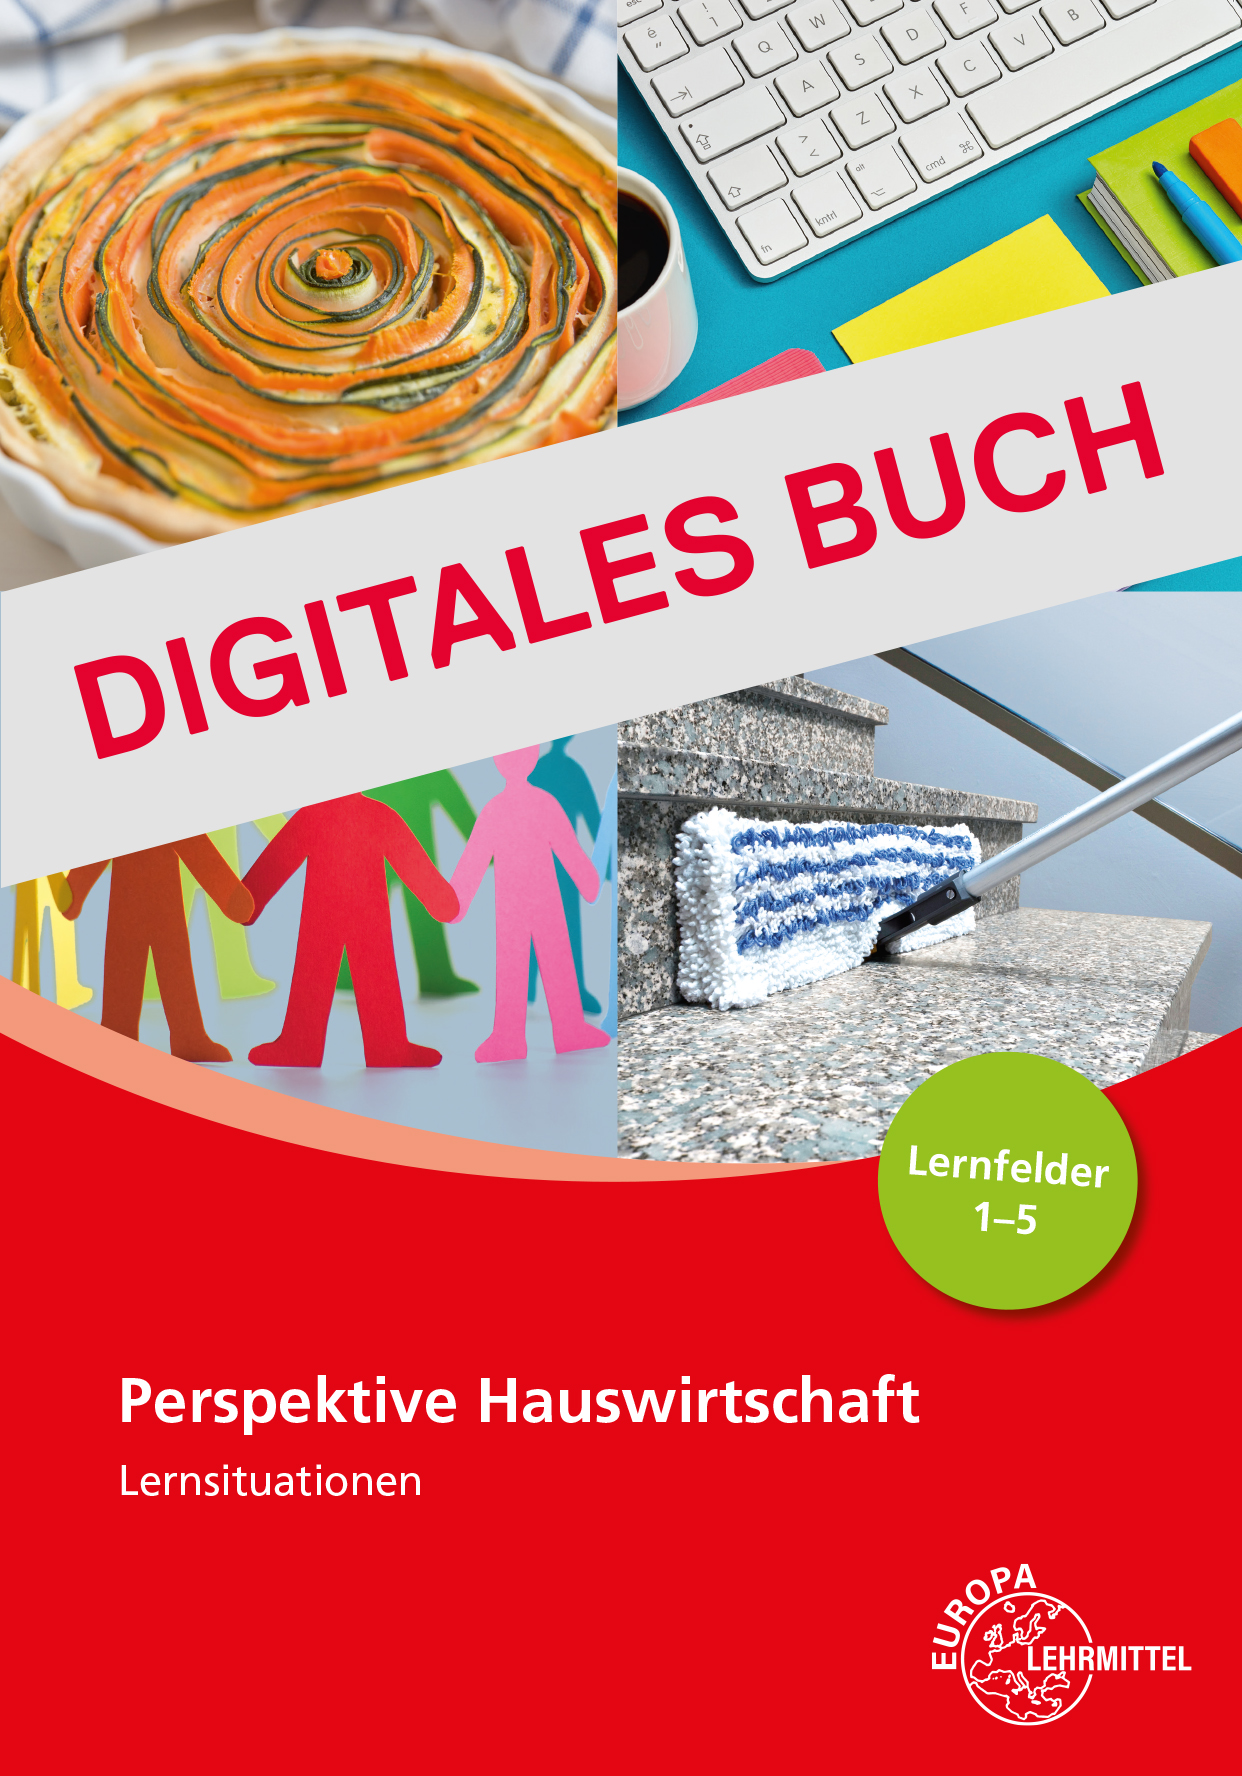 Lernsituationen Perspektive Hauswirtschaft Band 1 - LF 1-5 - Digitales Buch